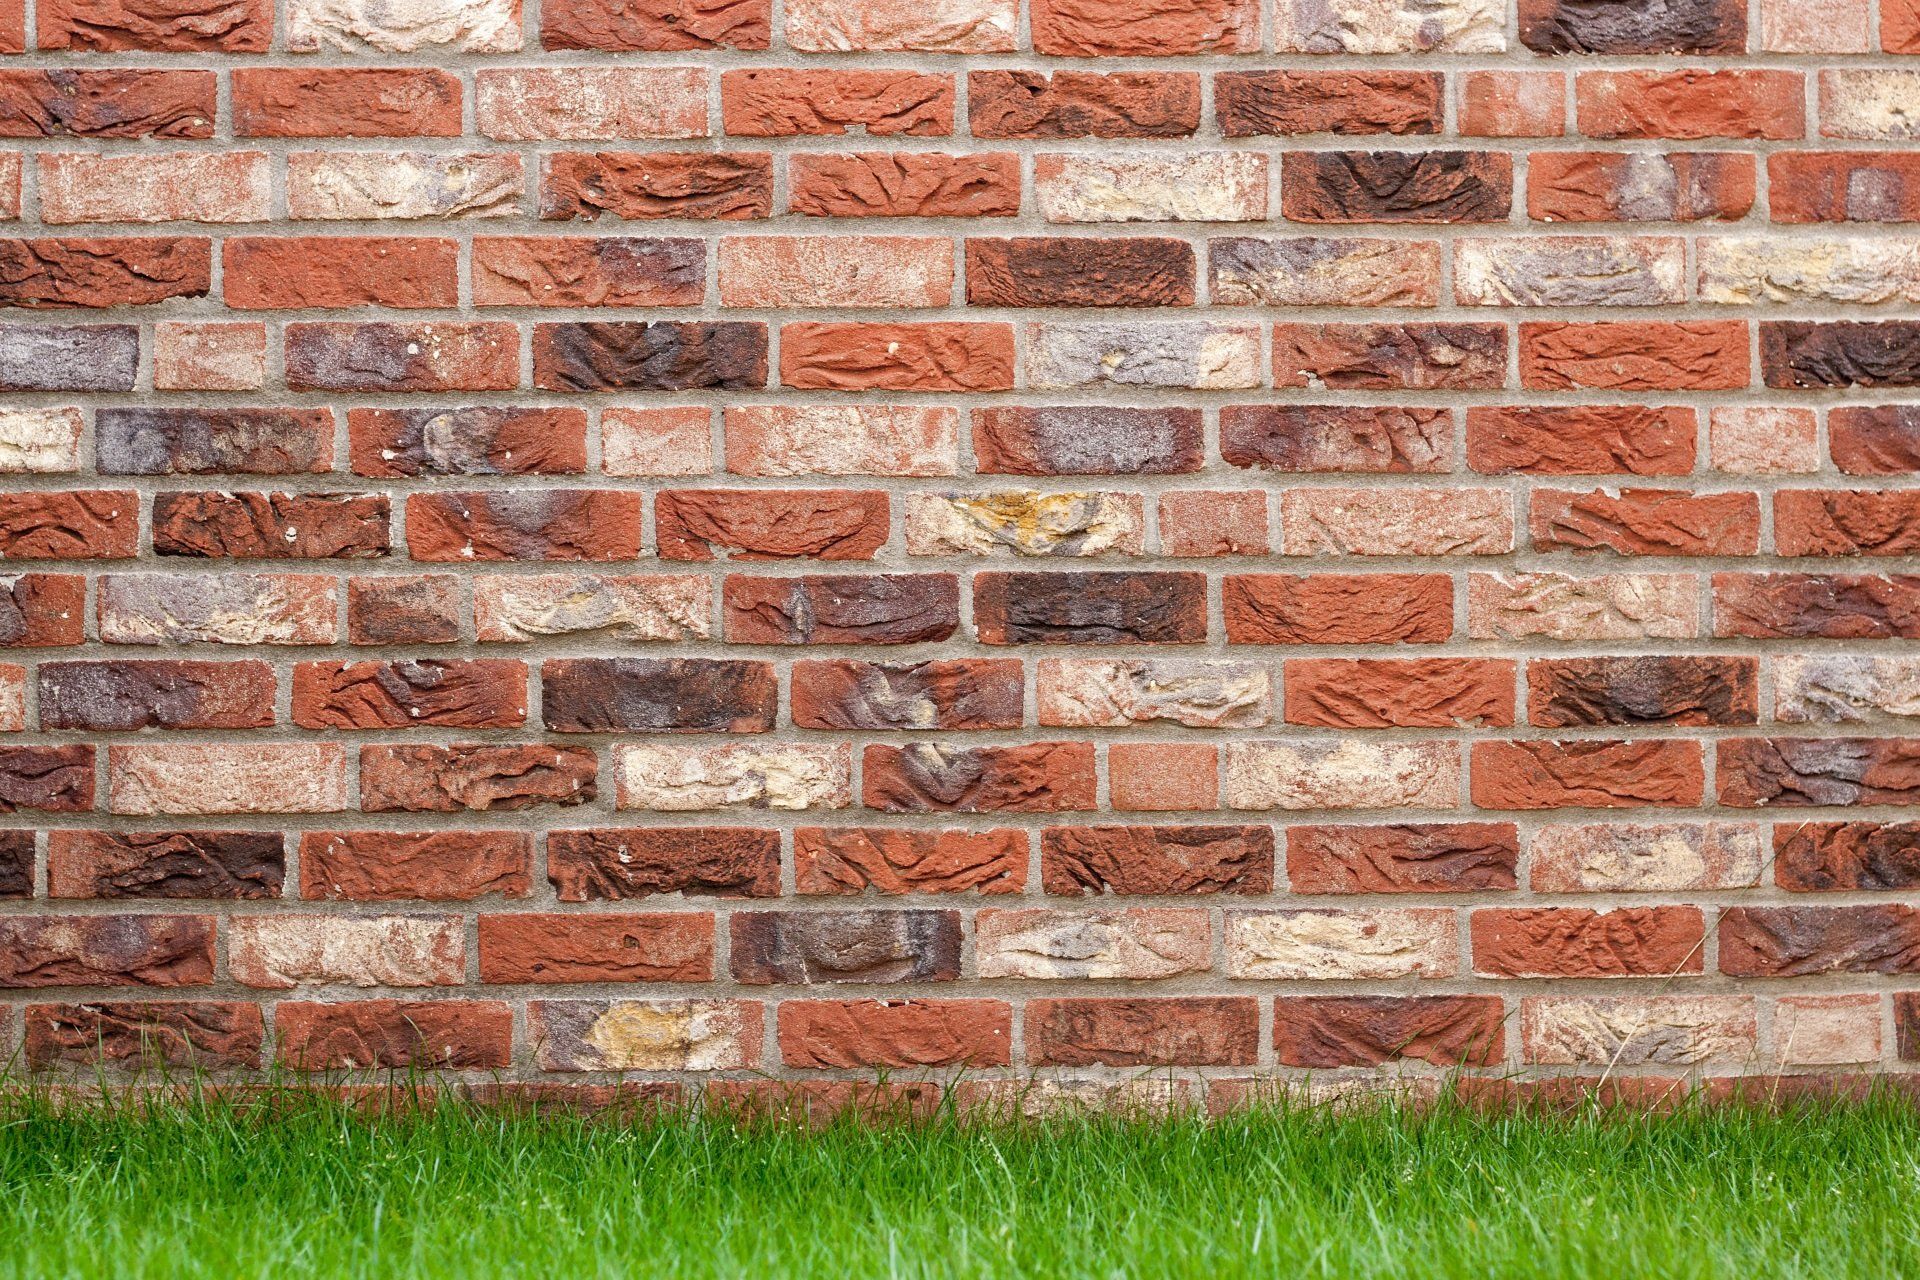 Brick pavers & other masonry supplies